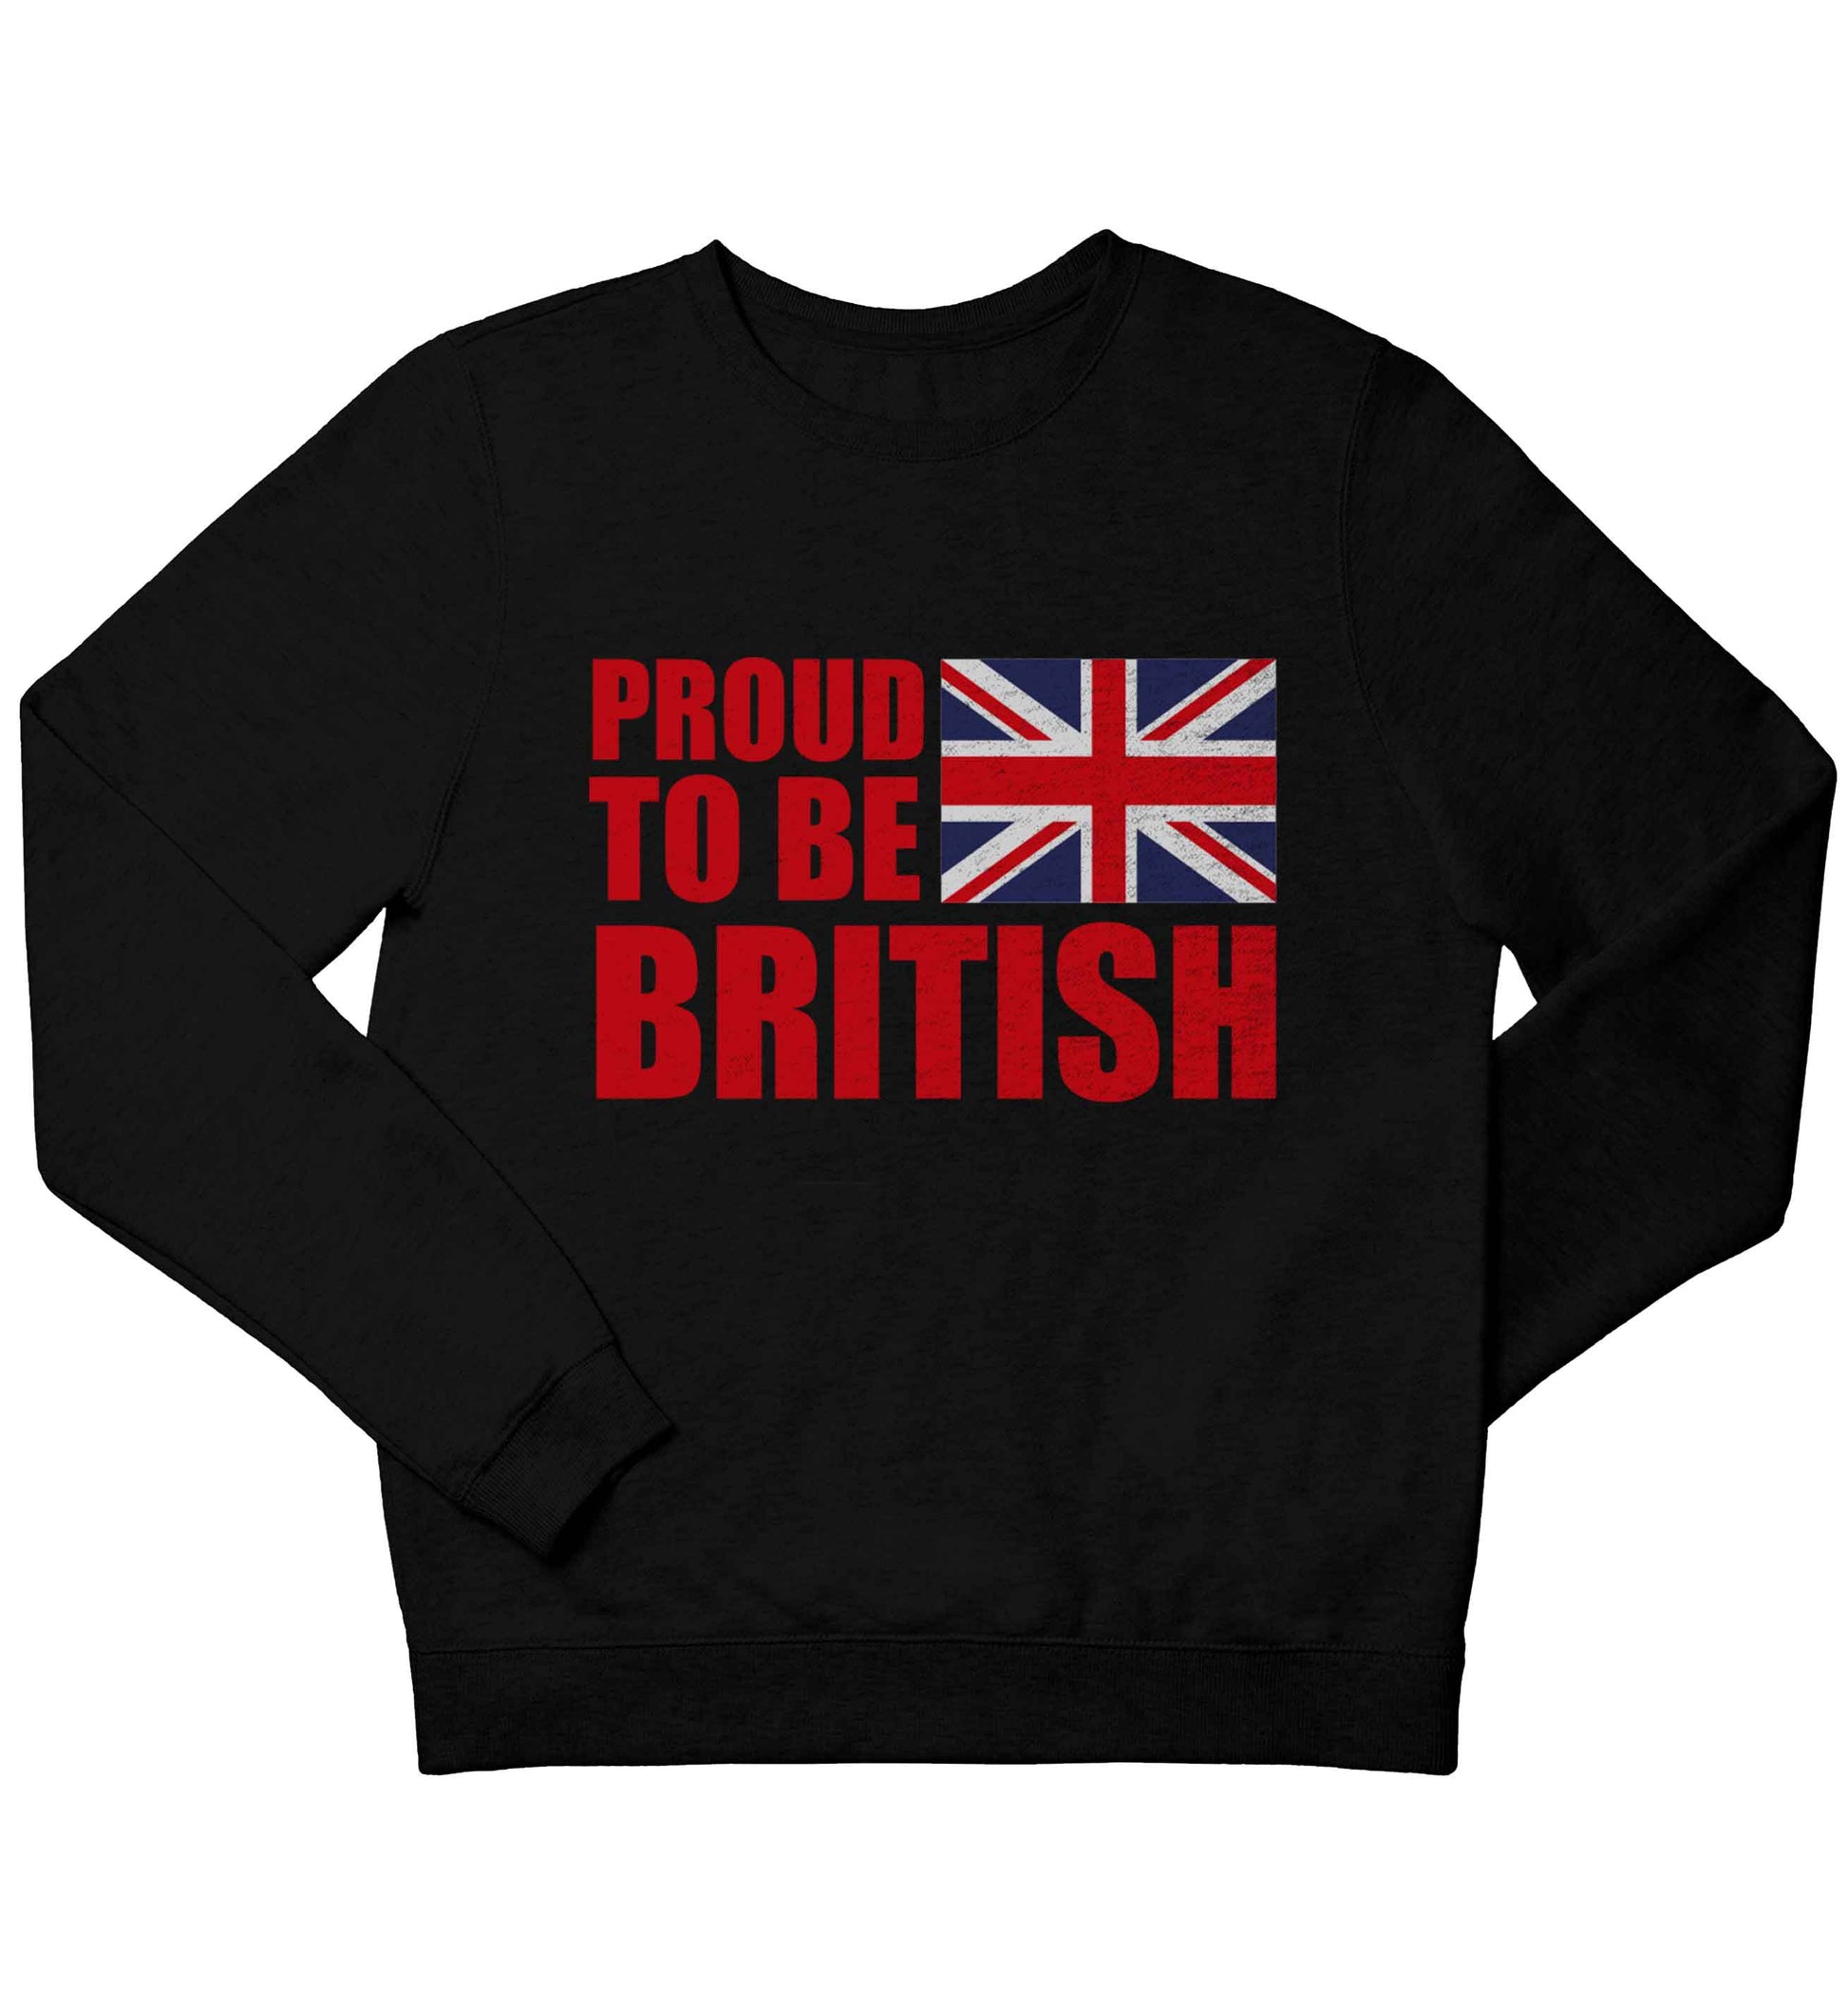 Proud to be British children's black sweater 12-13 Years